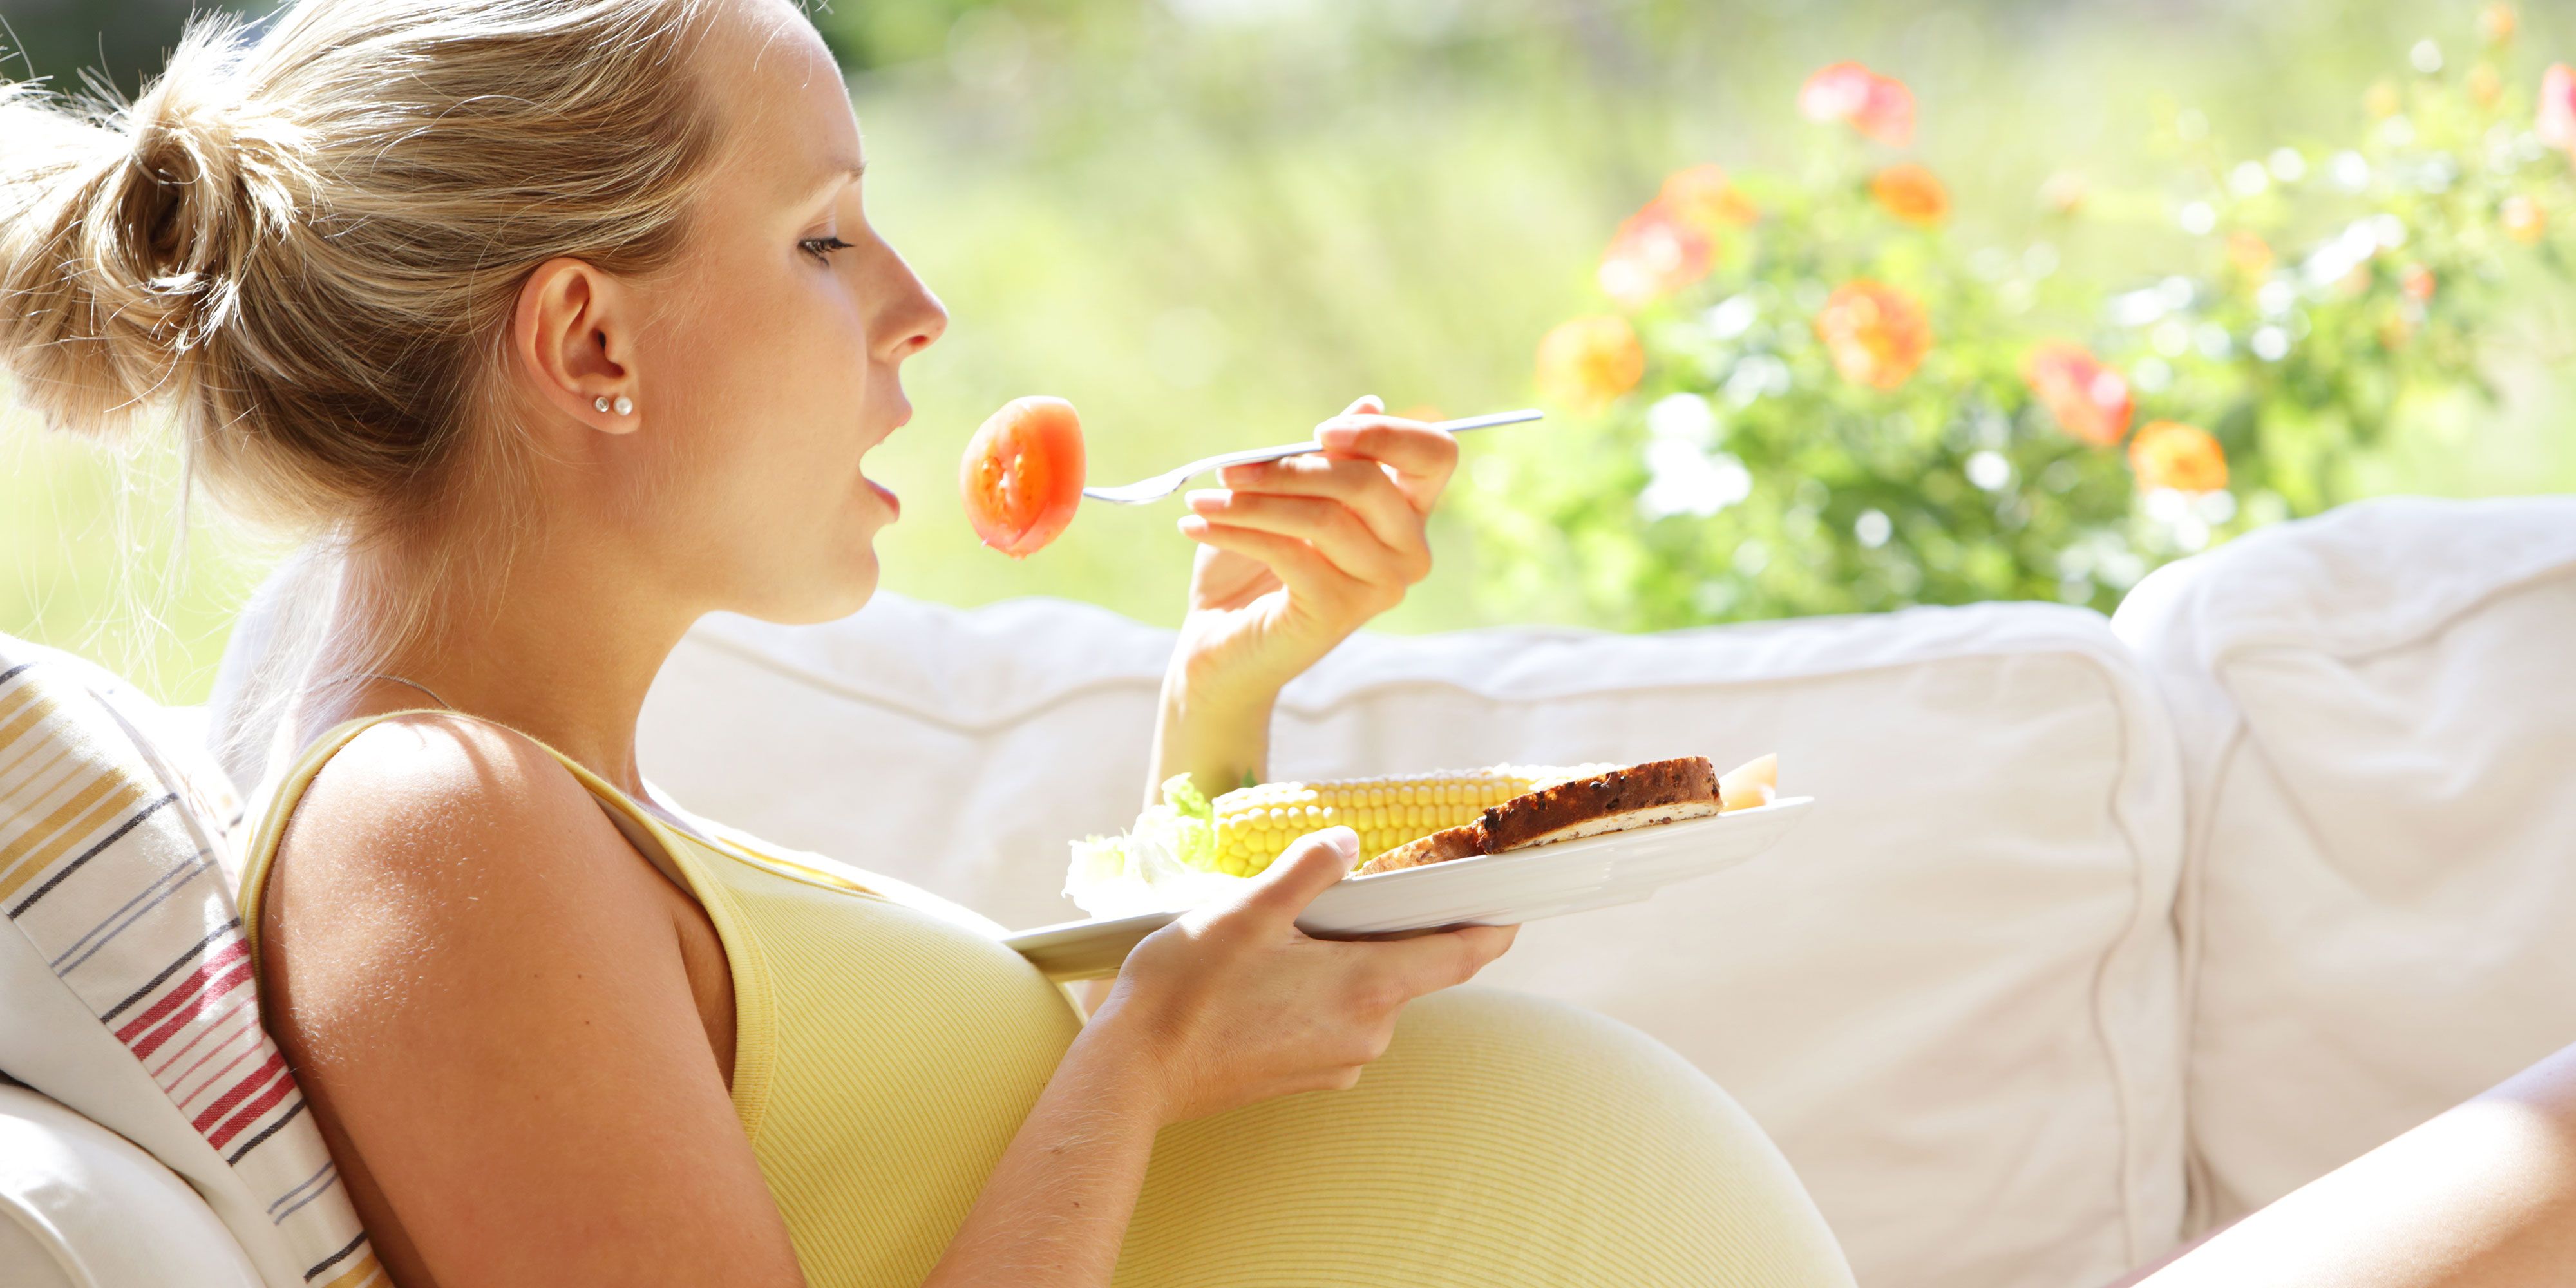 Apa saja asupan nutrisi yang baik dikonsumsi saat hamil?